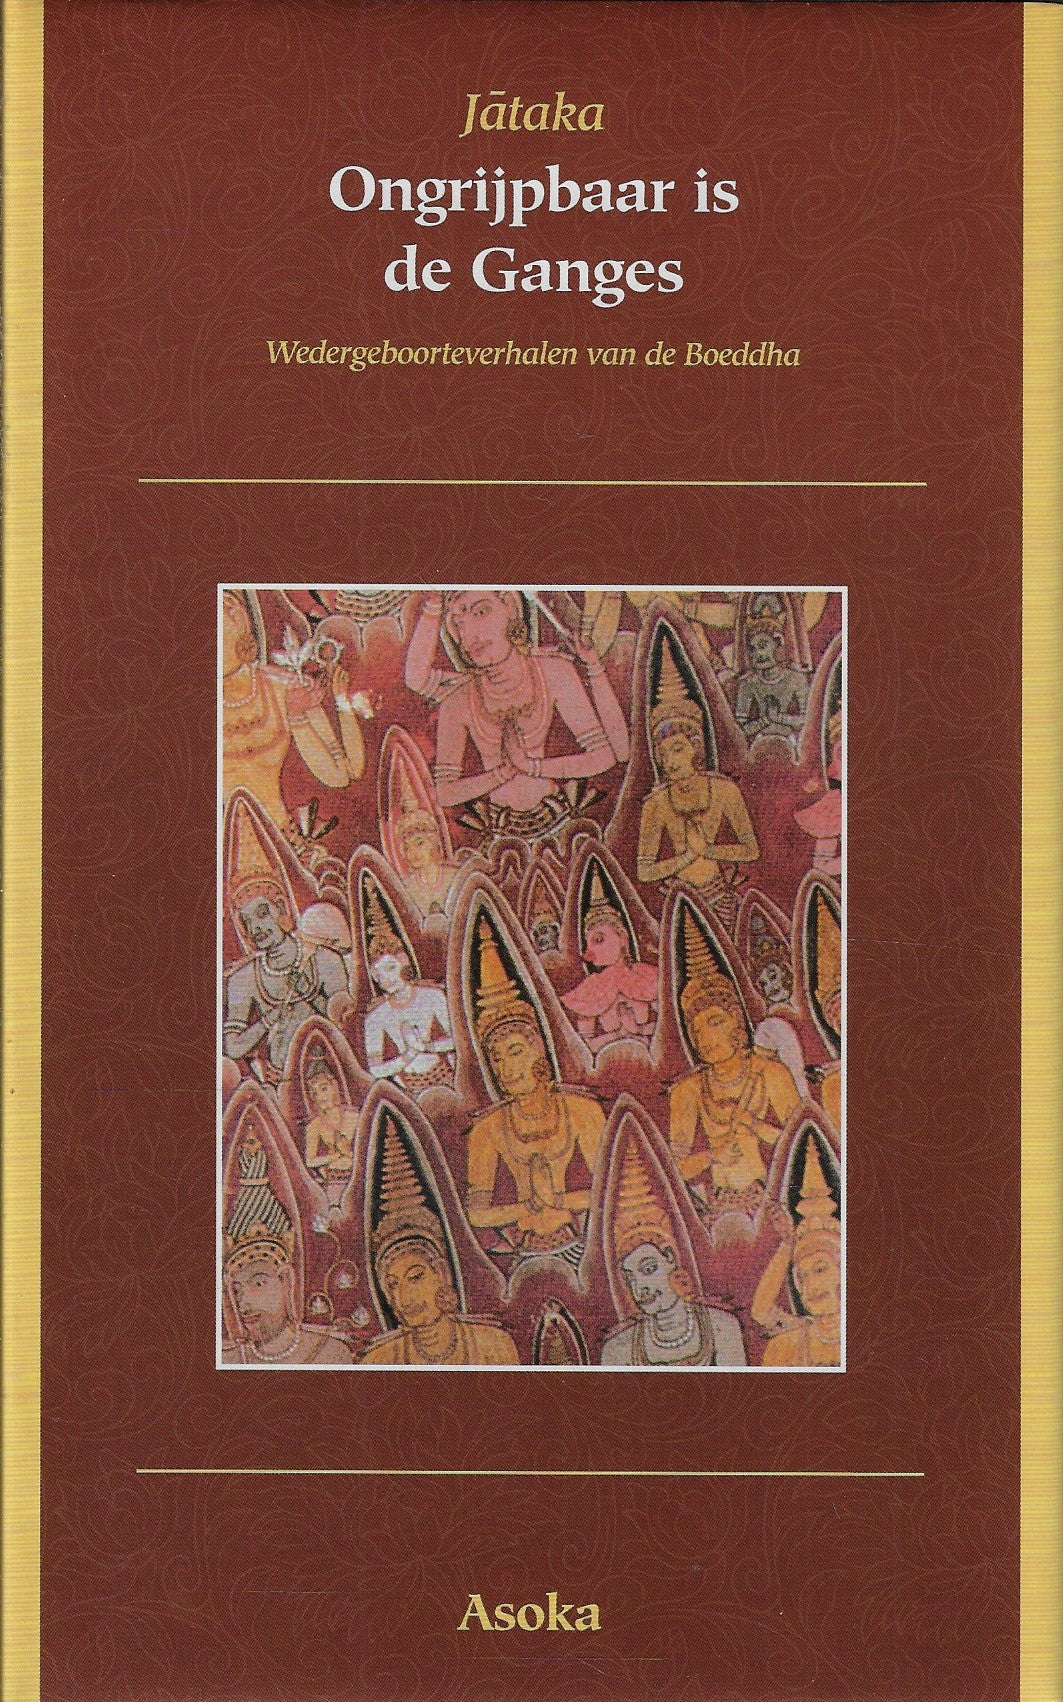 Ongrijpbaar is de Ganges / wedergeboorteverhalen van de Boeddha